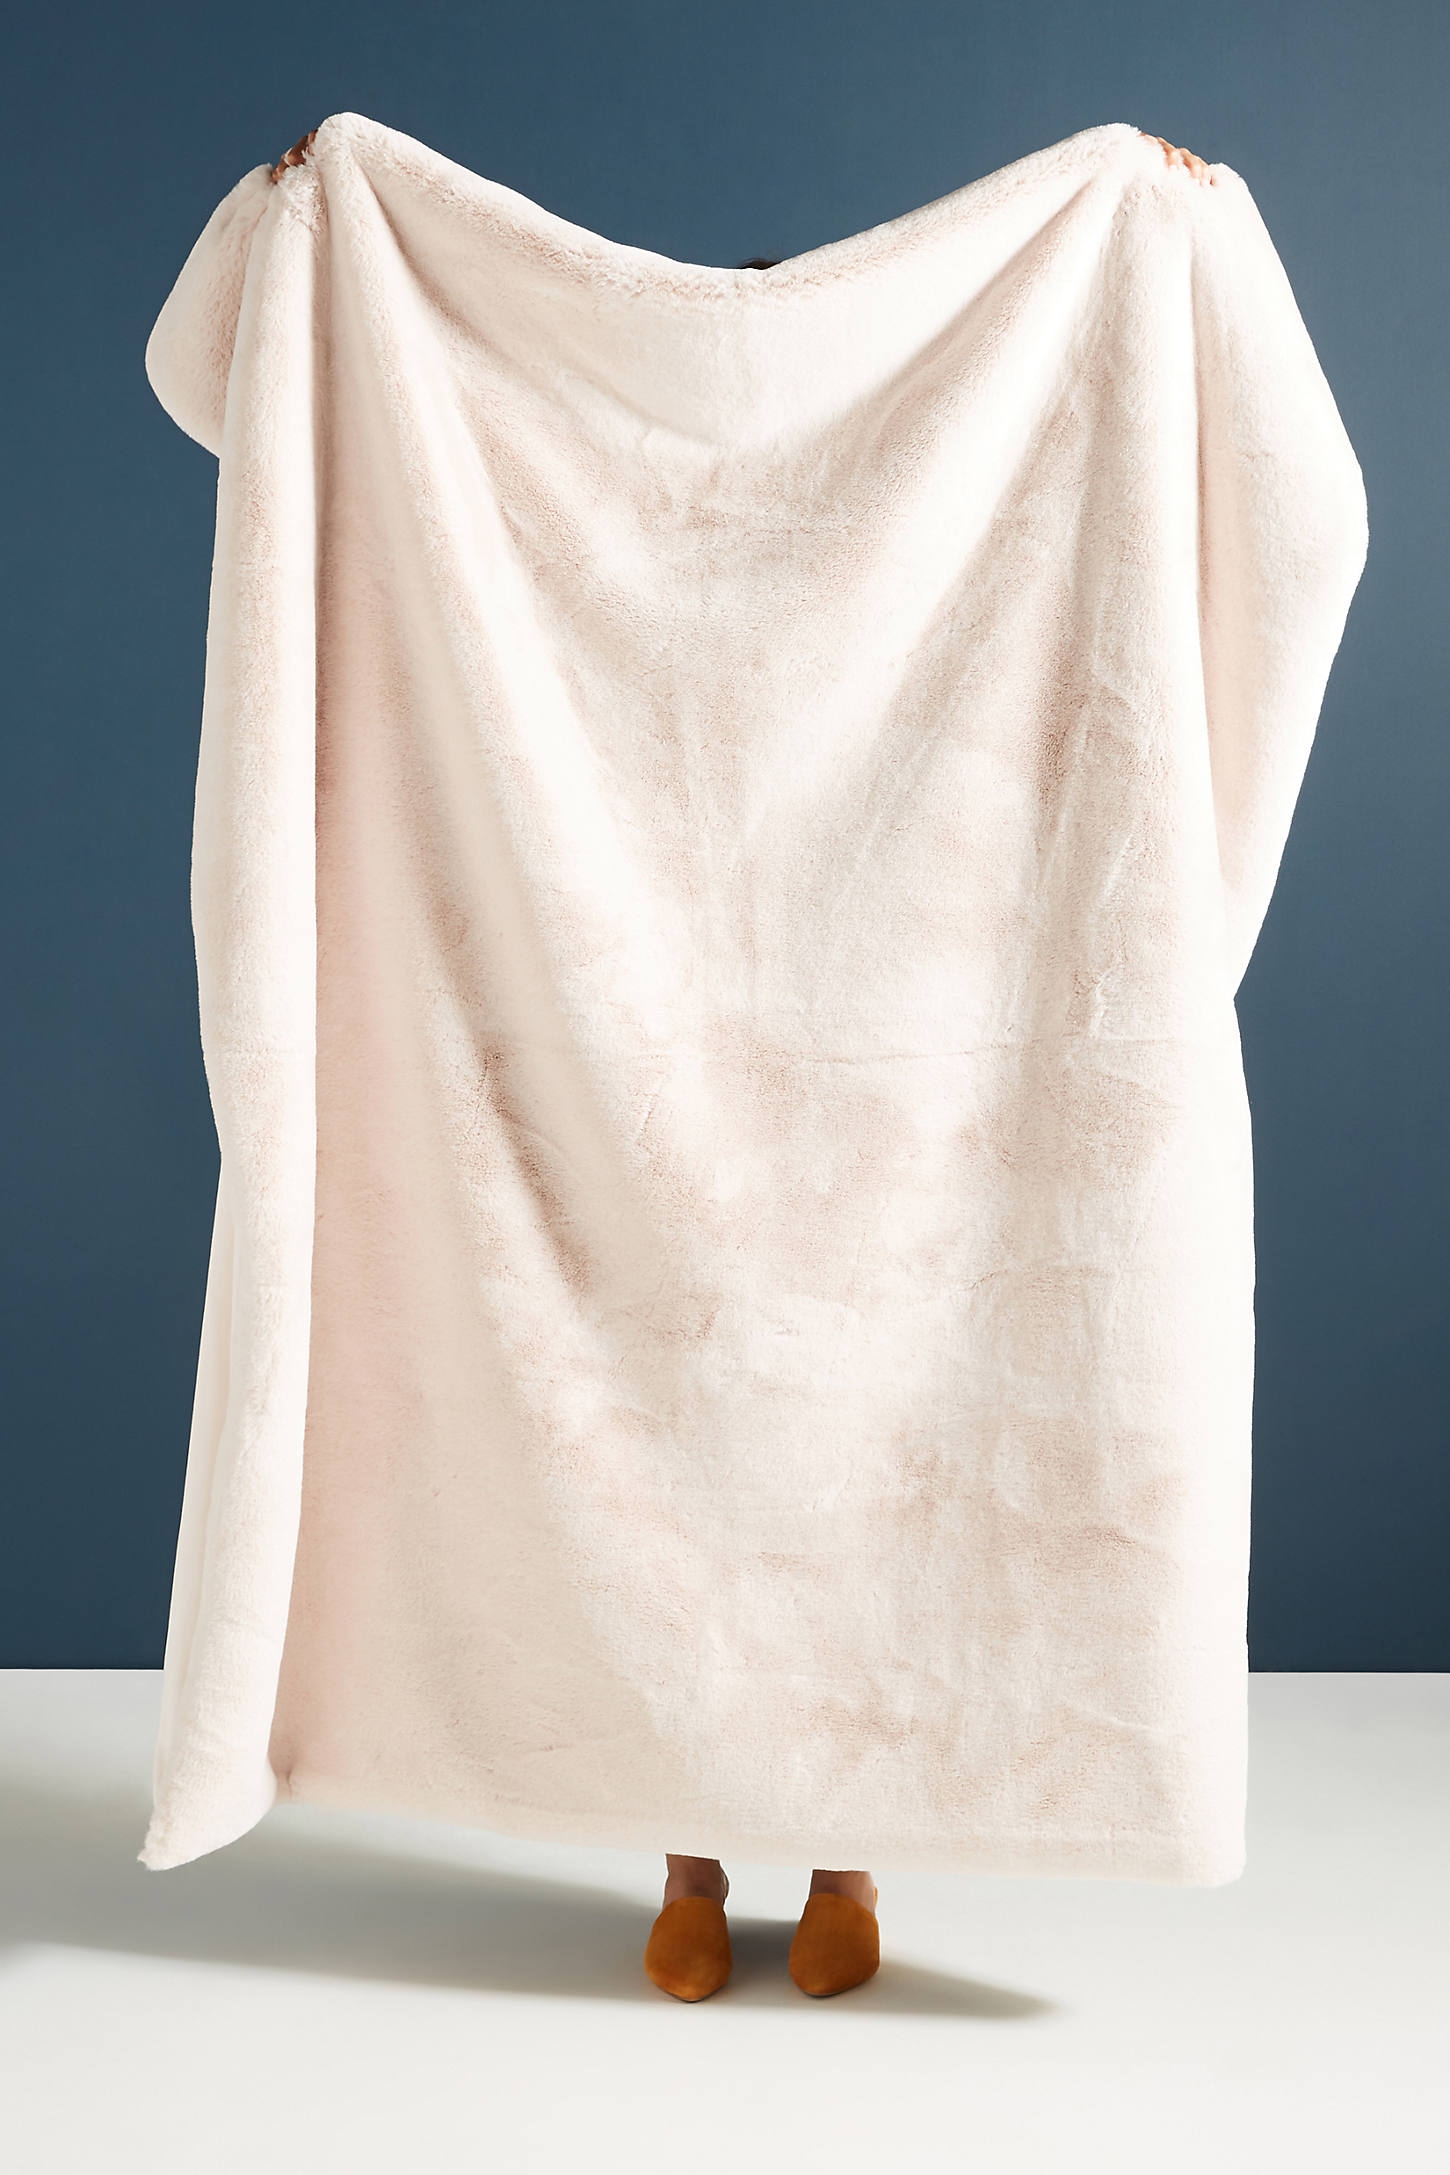 Sophie Faux Fur Throw Blanket - Image 0